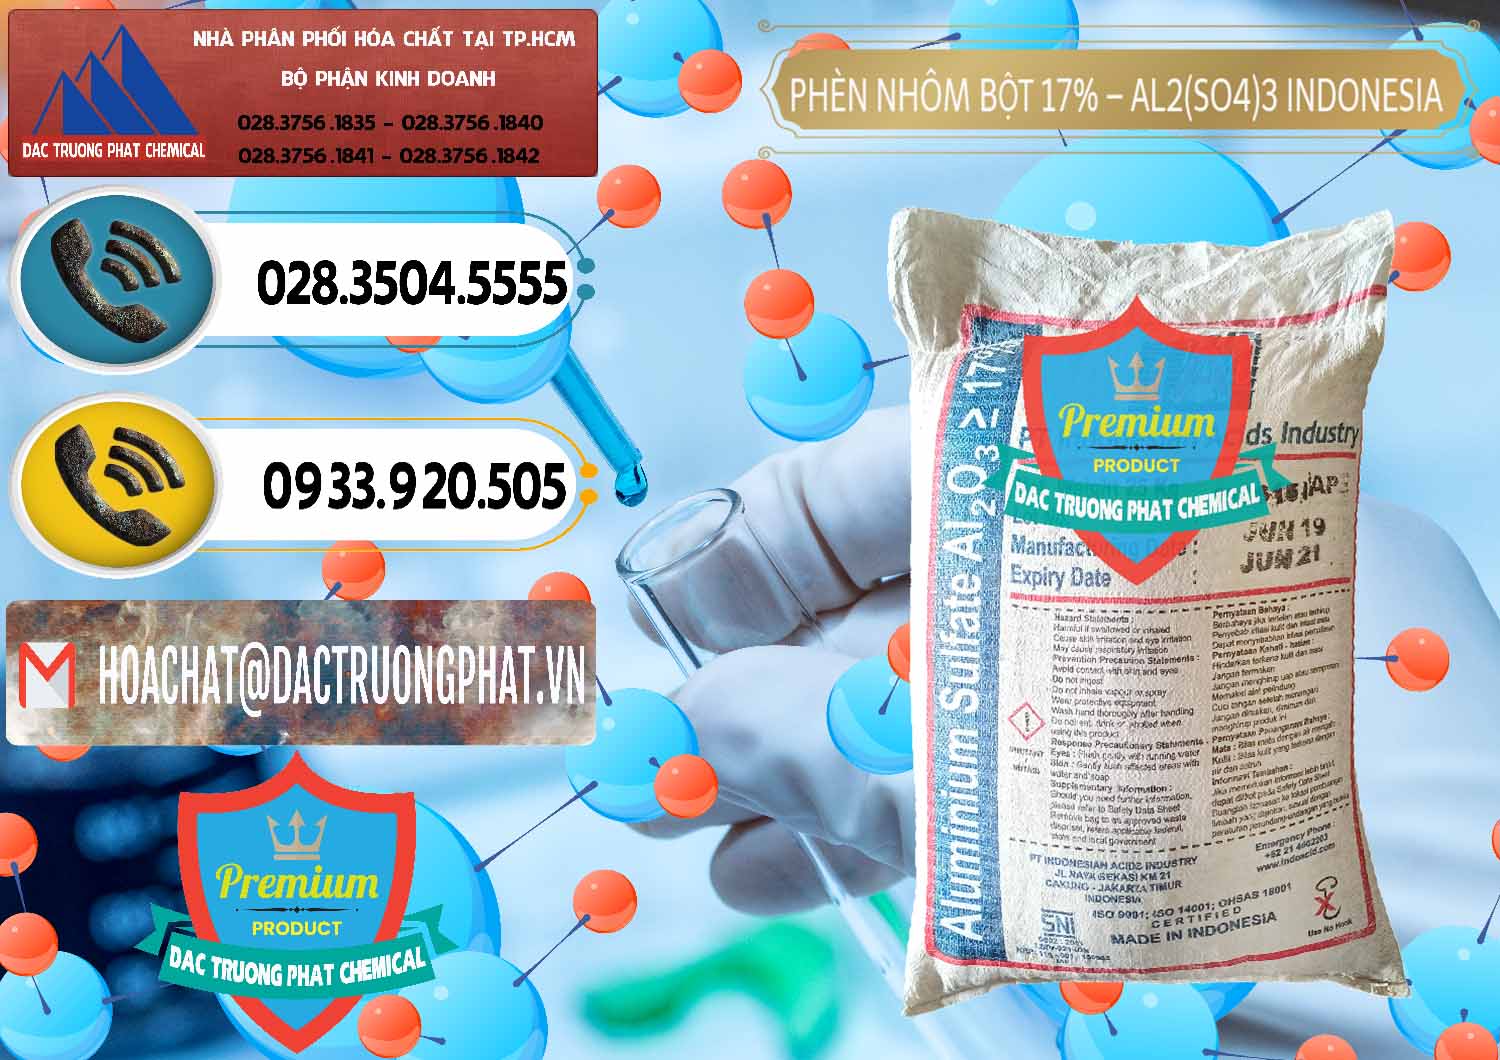 Chuyên nhập khẩu - bán Phèn Nhôm Bột - Al2(SO4)3 17% bao 25kg Indonesia - 0114 - Công ty chuyên kinh doanh _ cung cấp hóa chất tại TP.HCM - hoachatdetnhuom.vn